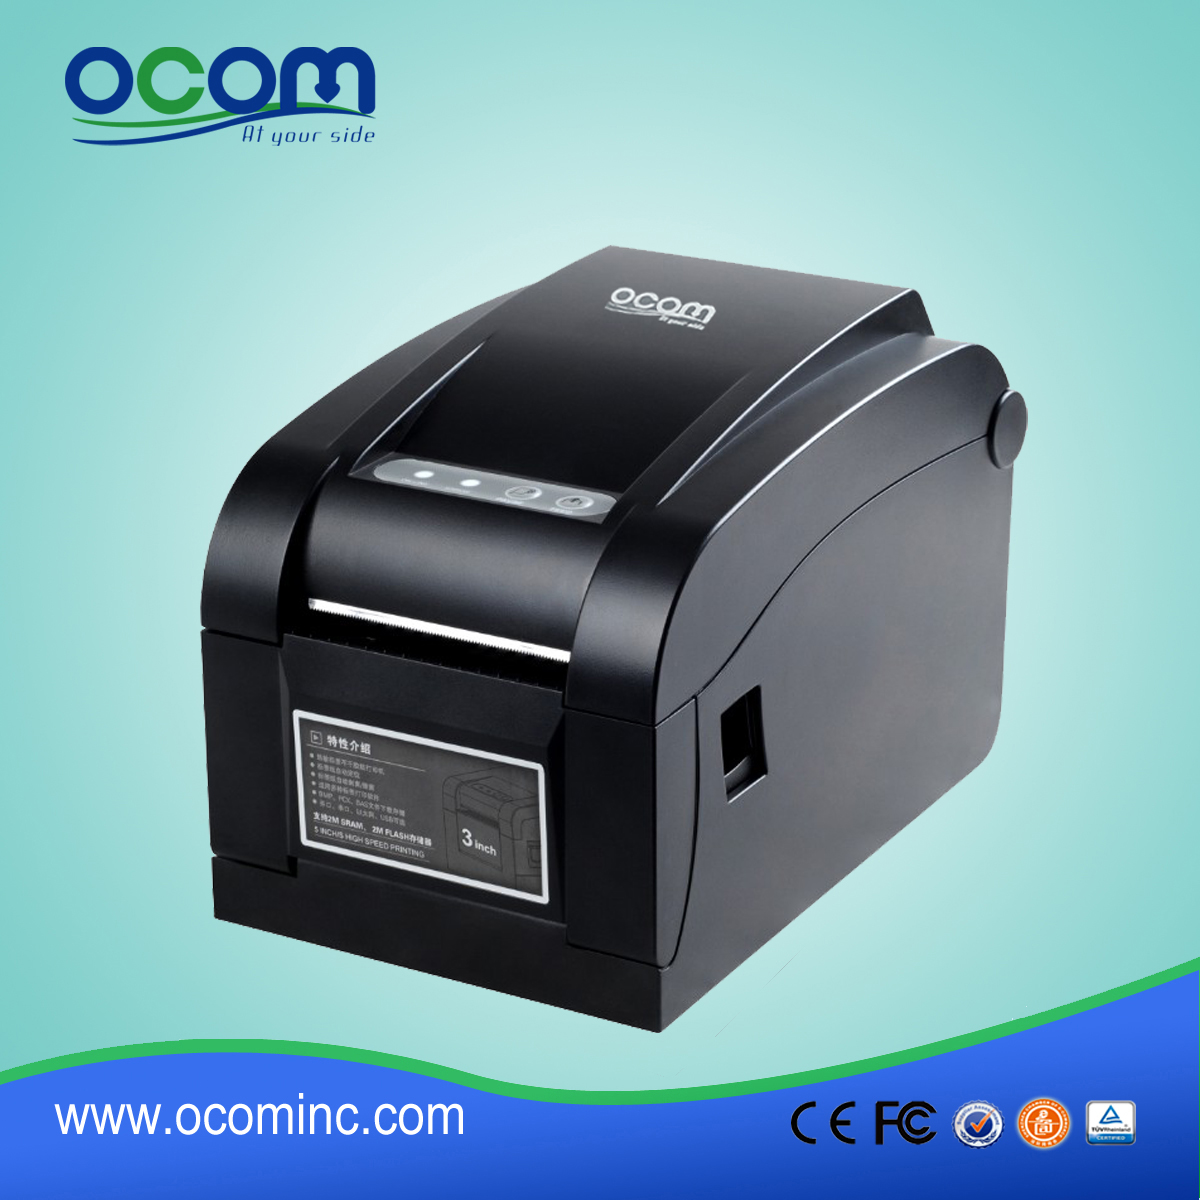 Gorąca sprzedawania termiczna drukarka etykiet z kodami kreskowymi-005 OCBP